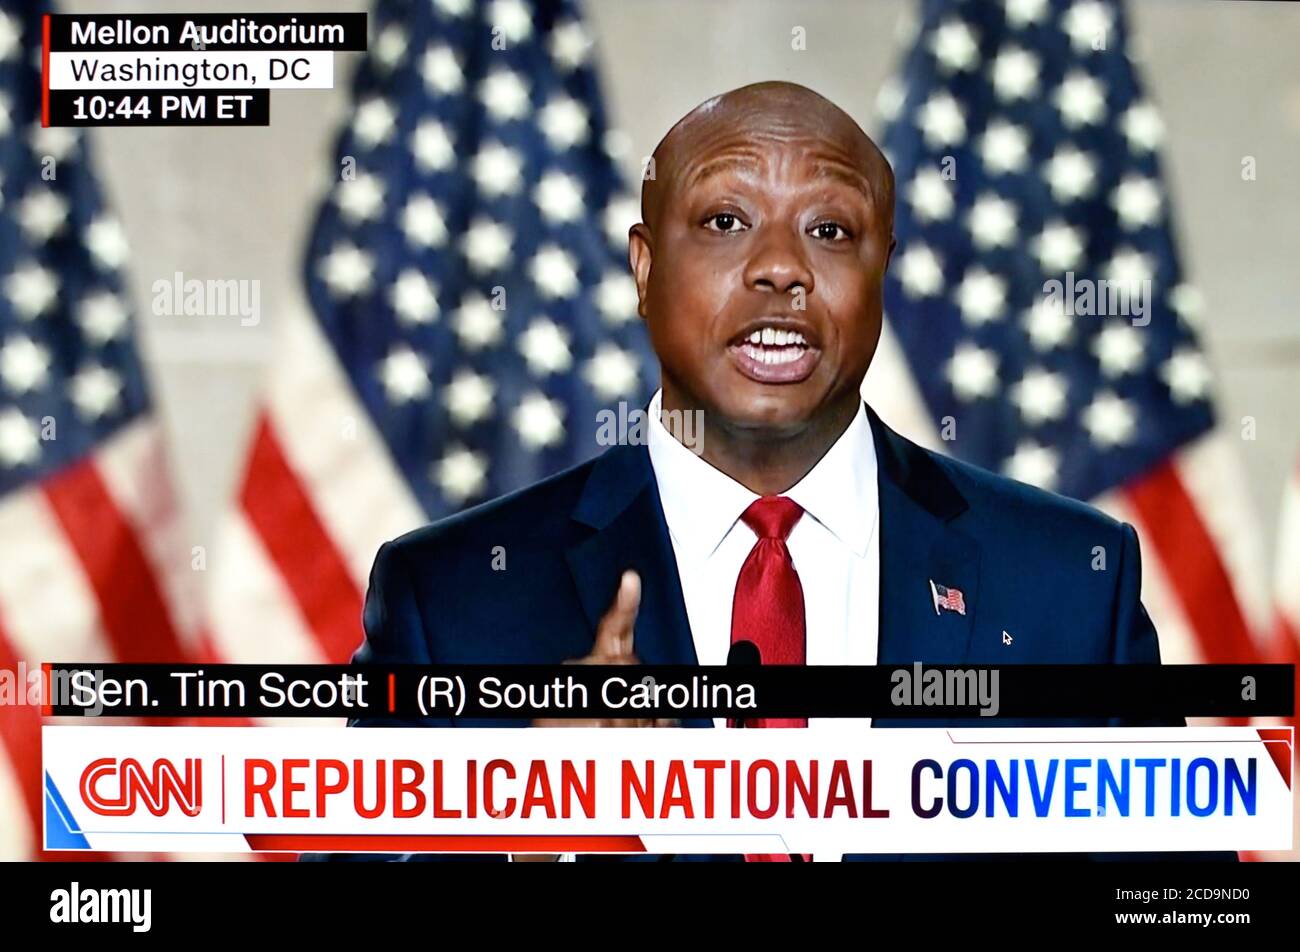 A CNN screen shot of U.S. Senator Tim Scott speaking at the 2020 Republican National Convention. Stock Photo